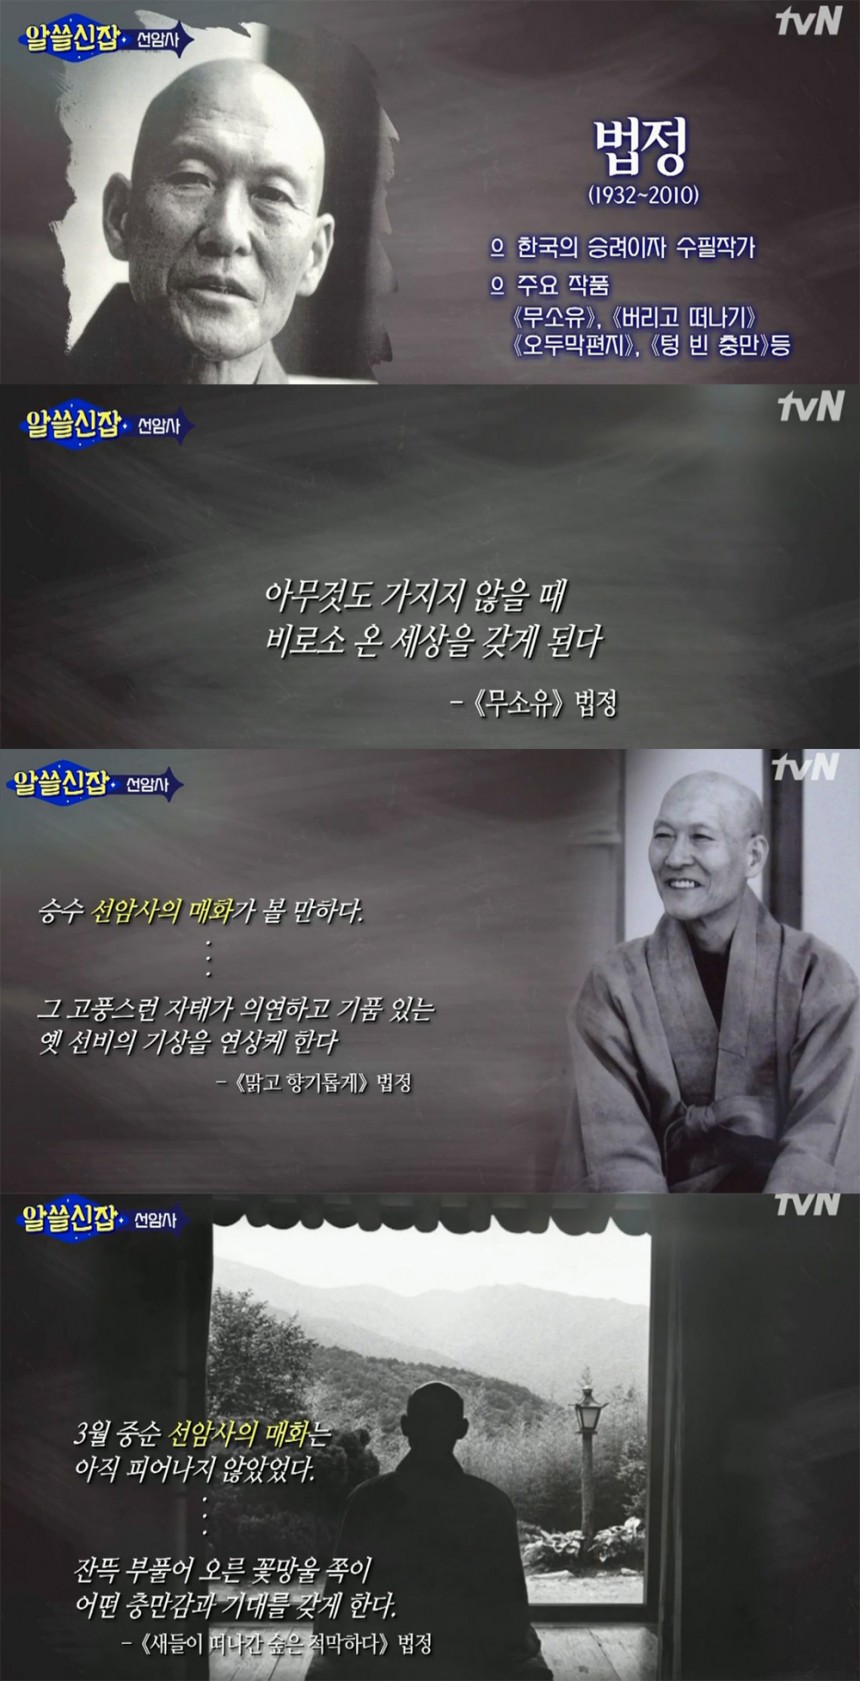 tvN ‘알쓸신잡’ 방송 캡처